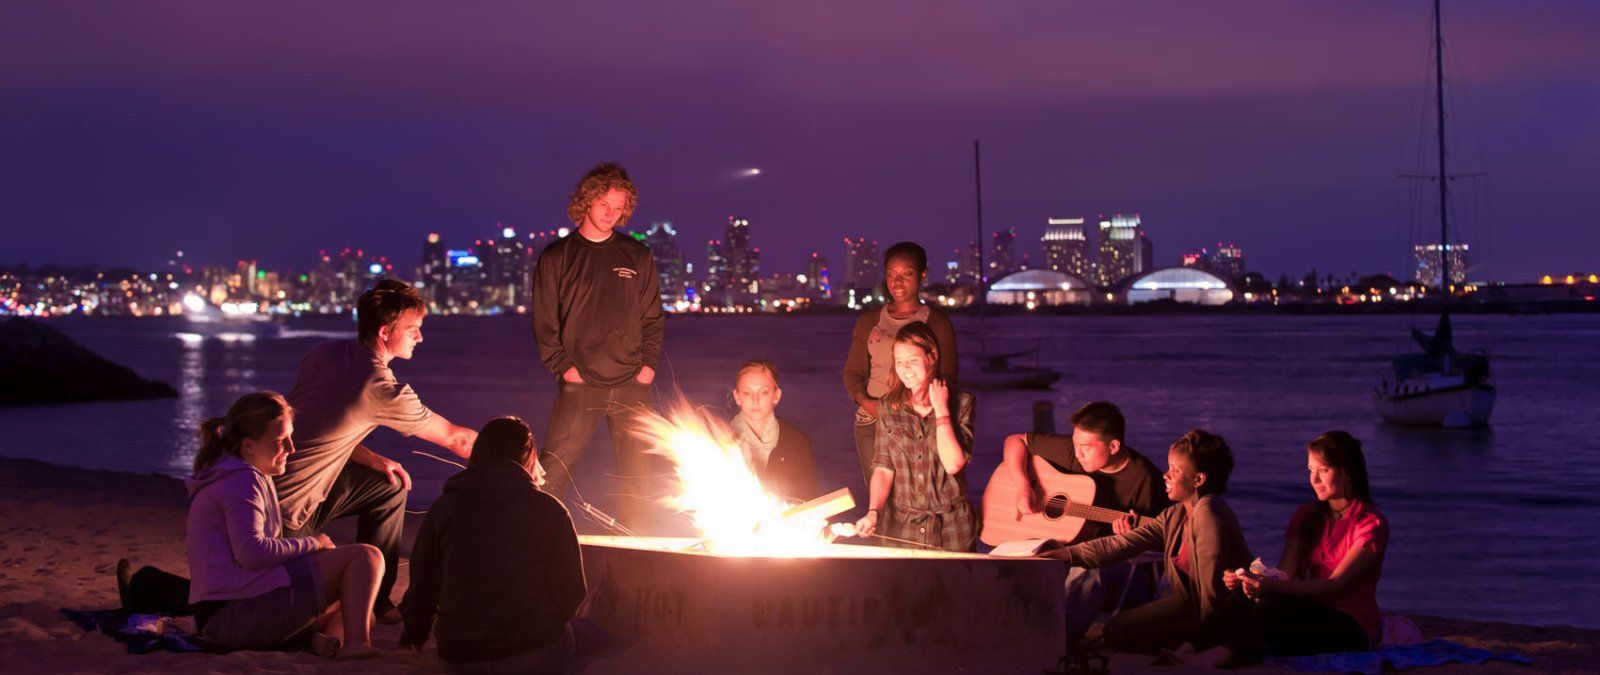 鶹 students have a beach bonfire at night and play music while at Shelter Island in San Diego.